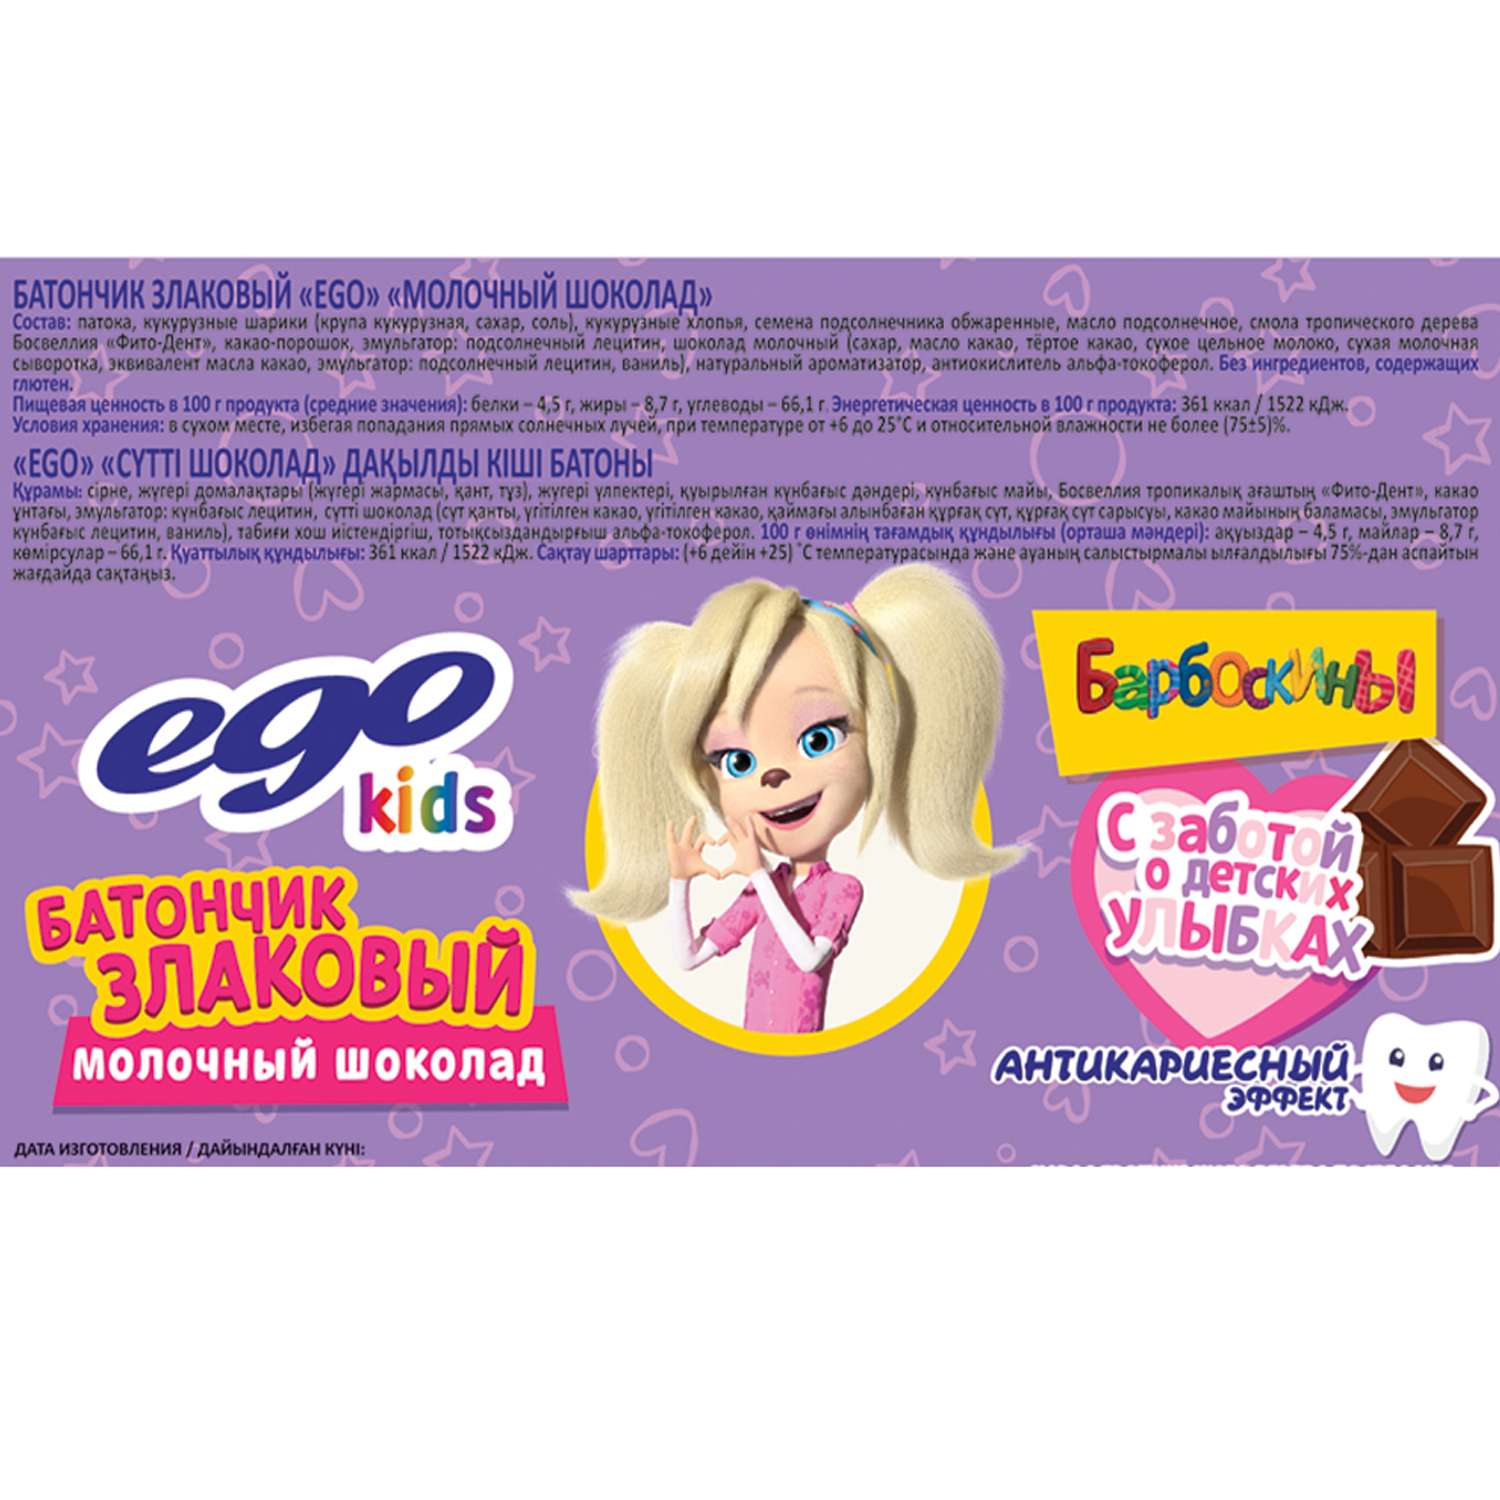 Батончик злаковый Ego kids молочный шоколад 25г - фото 2